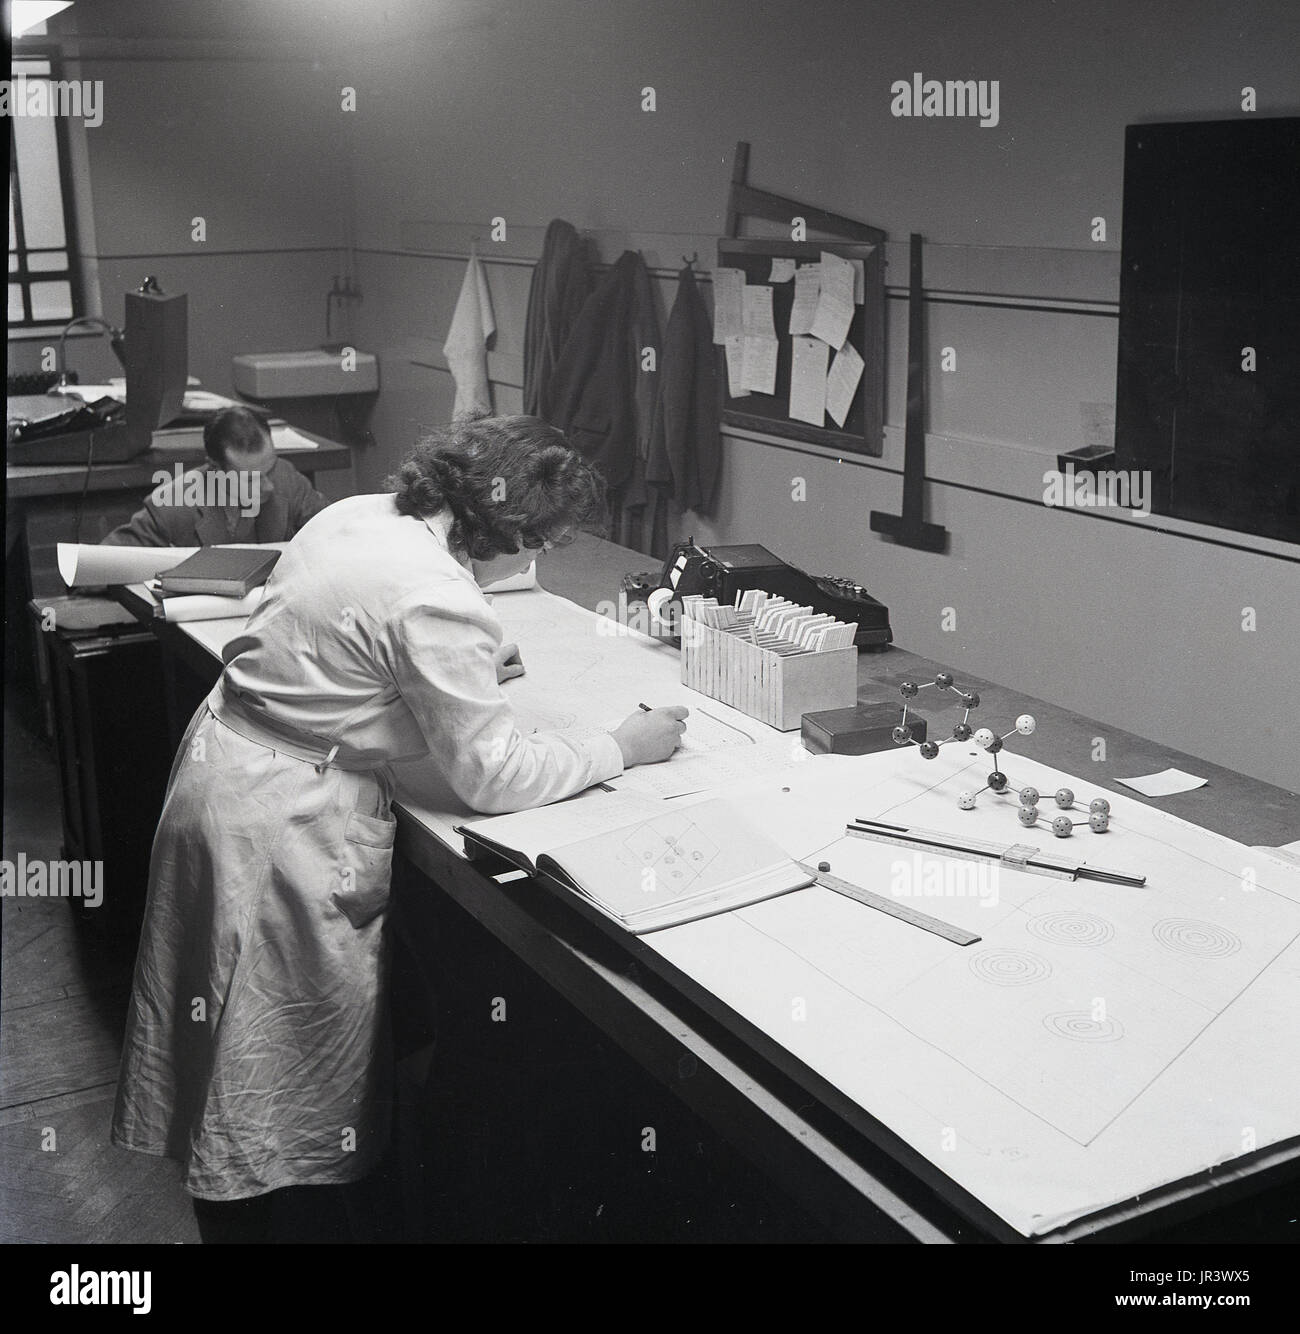 1951, historische, weiblicher Mathematiker in den weißen Mantel an einer Werkbank Berechnungen in einer Arbeit Buch verwenden, ein Lineal, einen rechenschieber und einem Kugel-stab-Modell, England, UK. Stockfoto